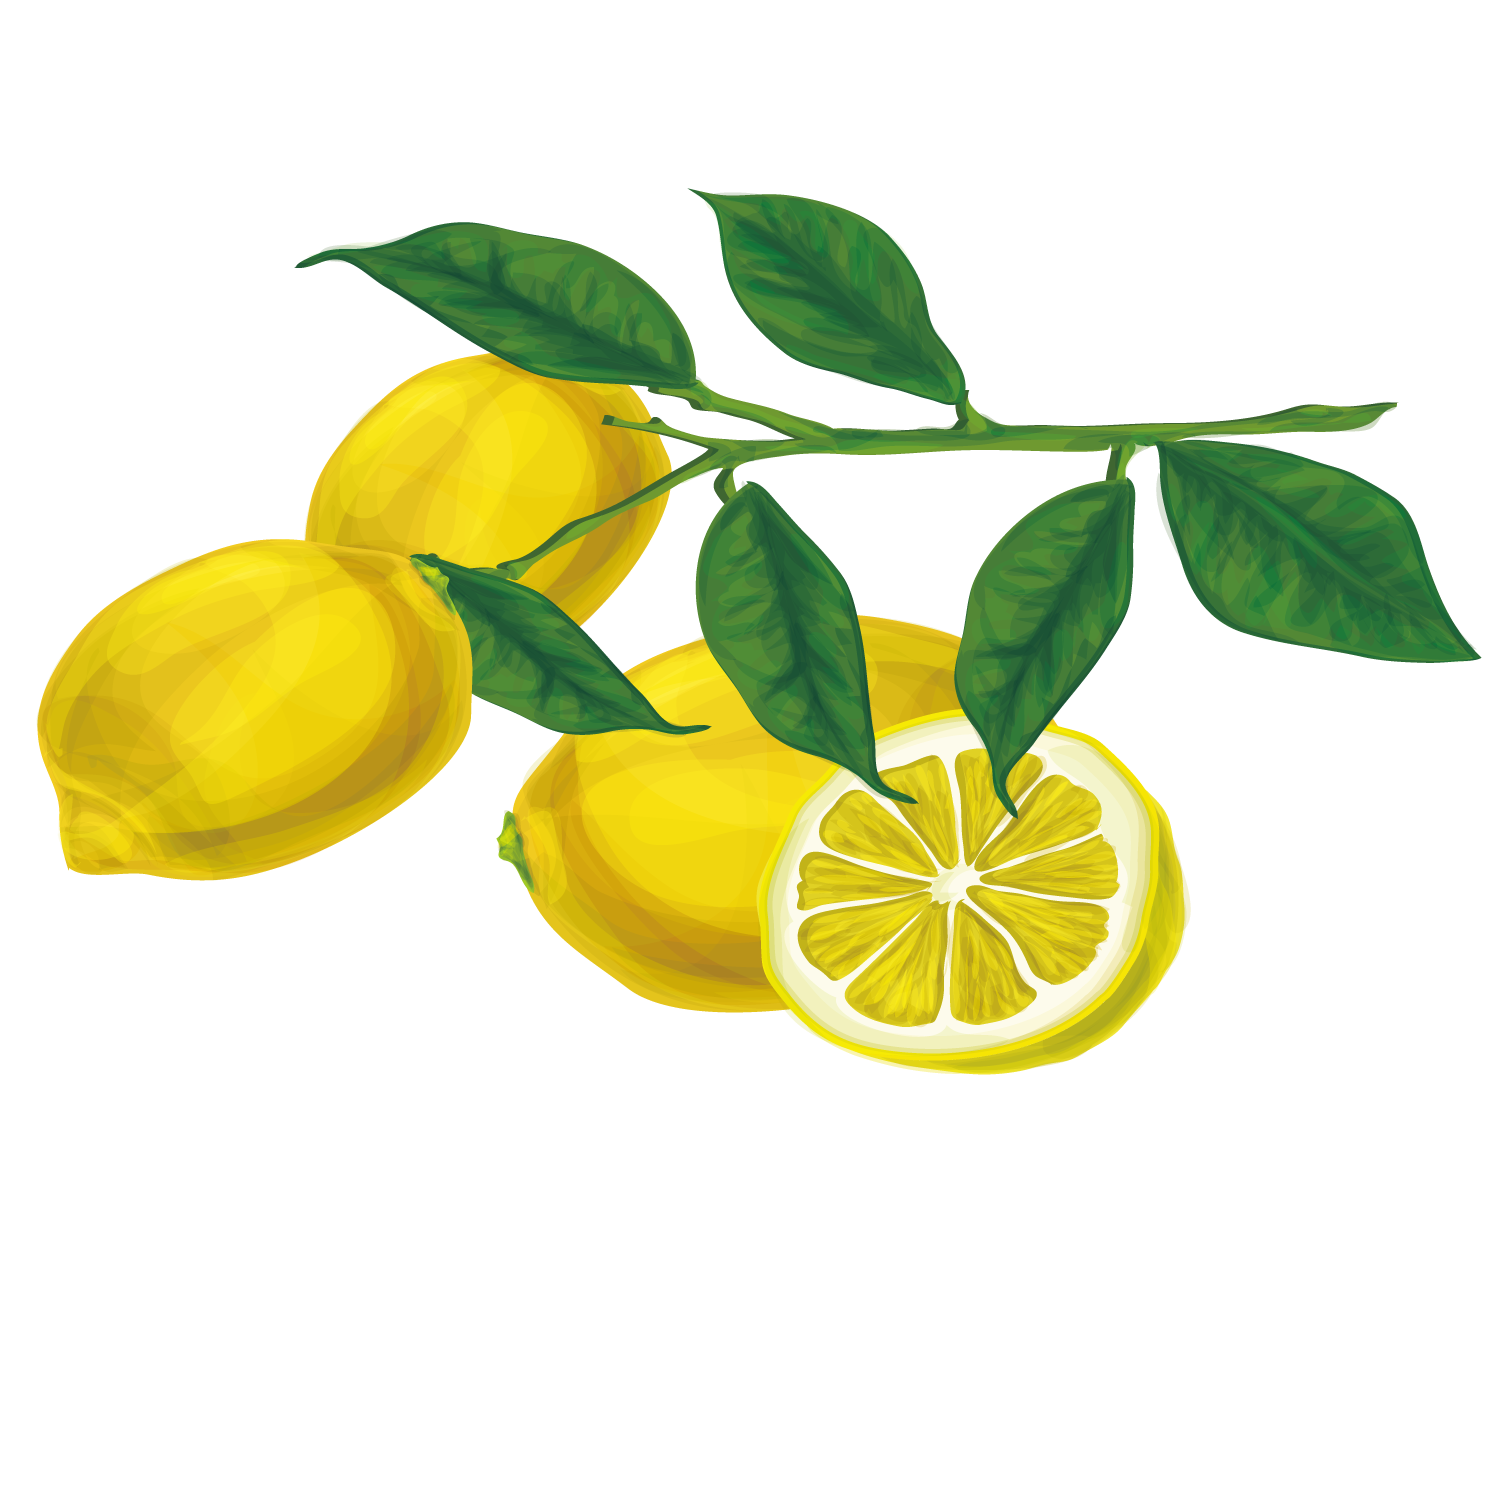 عکس منحصر به فرد و دیدنی از لیمو ترش با رنگ زیبا